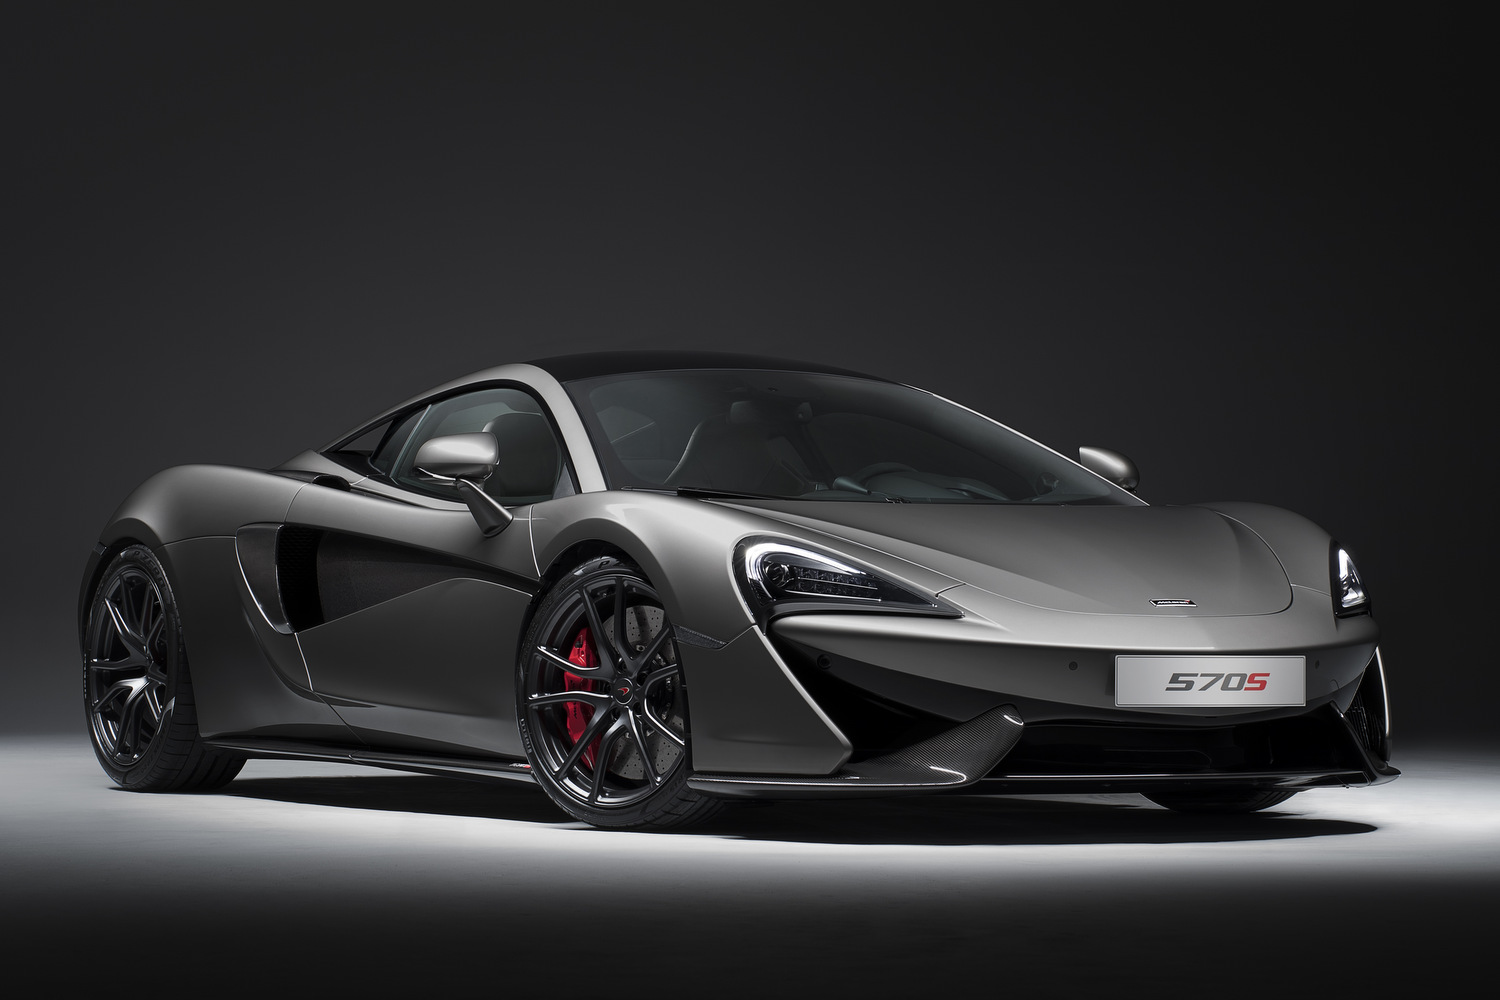 Elkészült a tökéletes McLaren sportkocsi 2